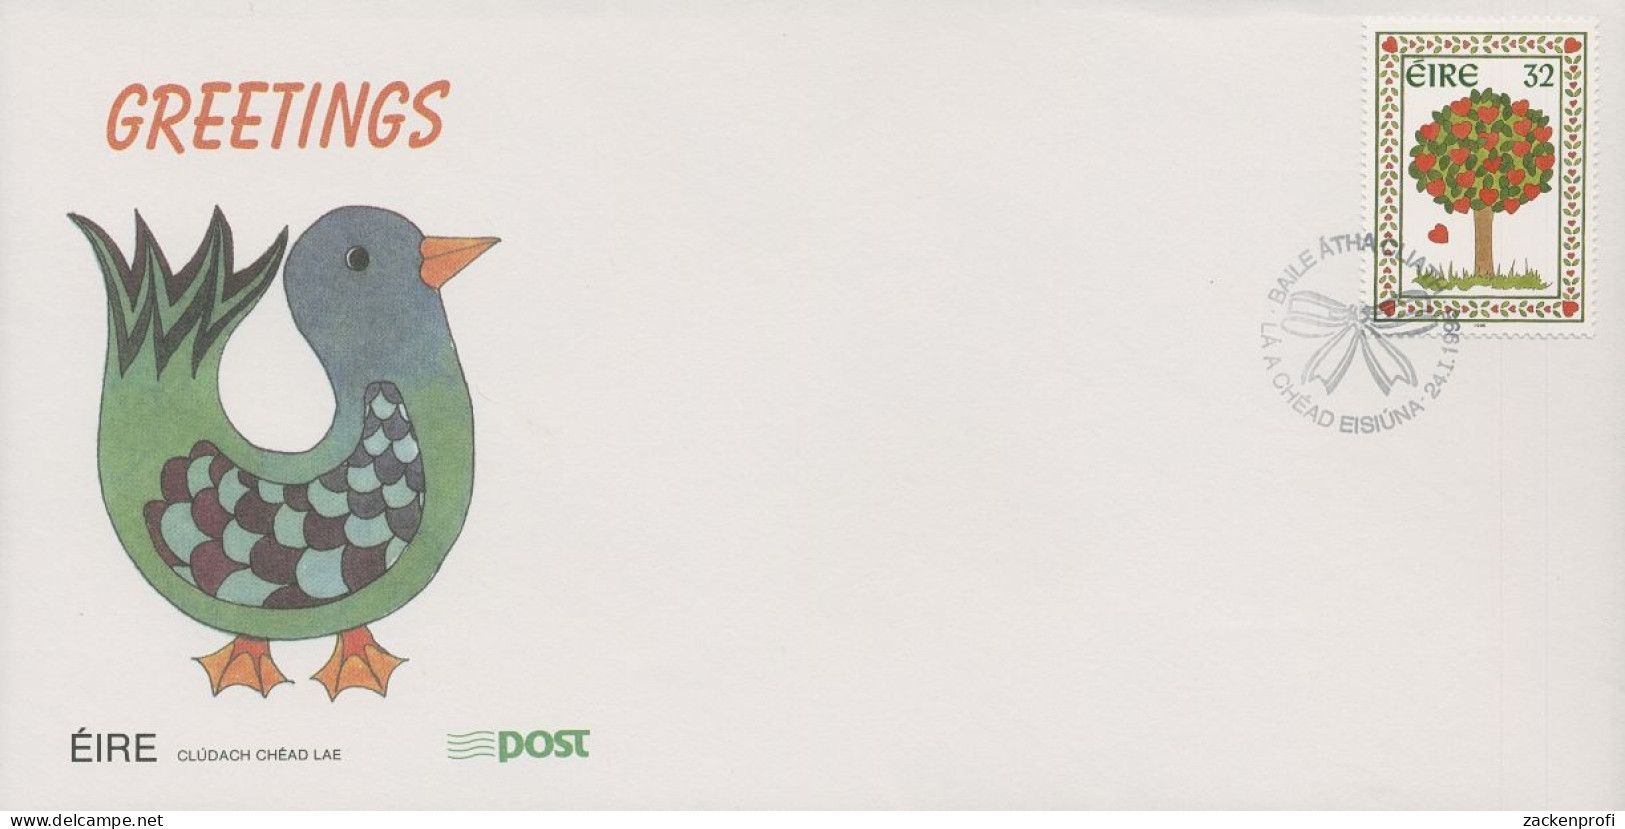 Irland 1995 Grußmarke: Baum Mit Herzen Ersttagsbrief 884 FDC (X18583) - FDC